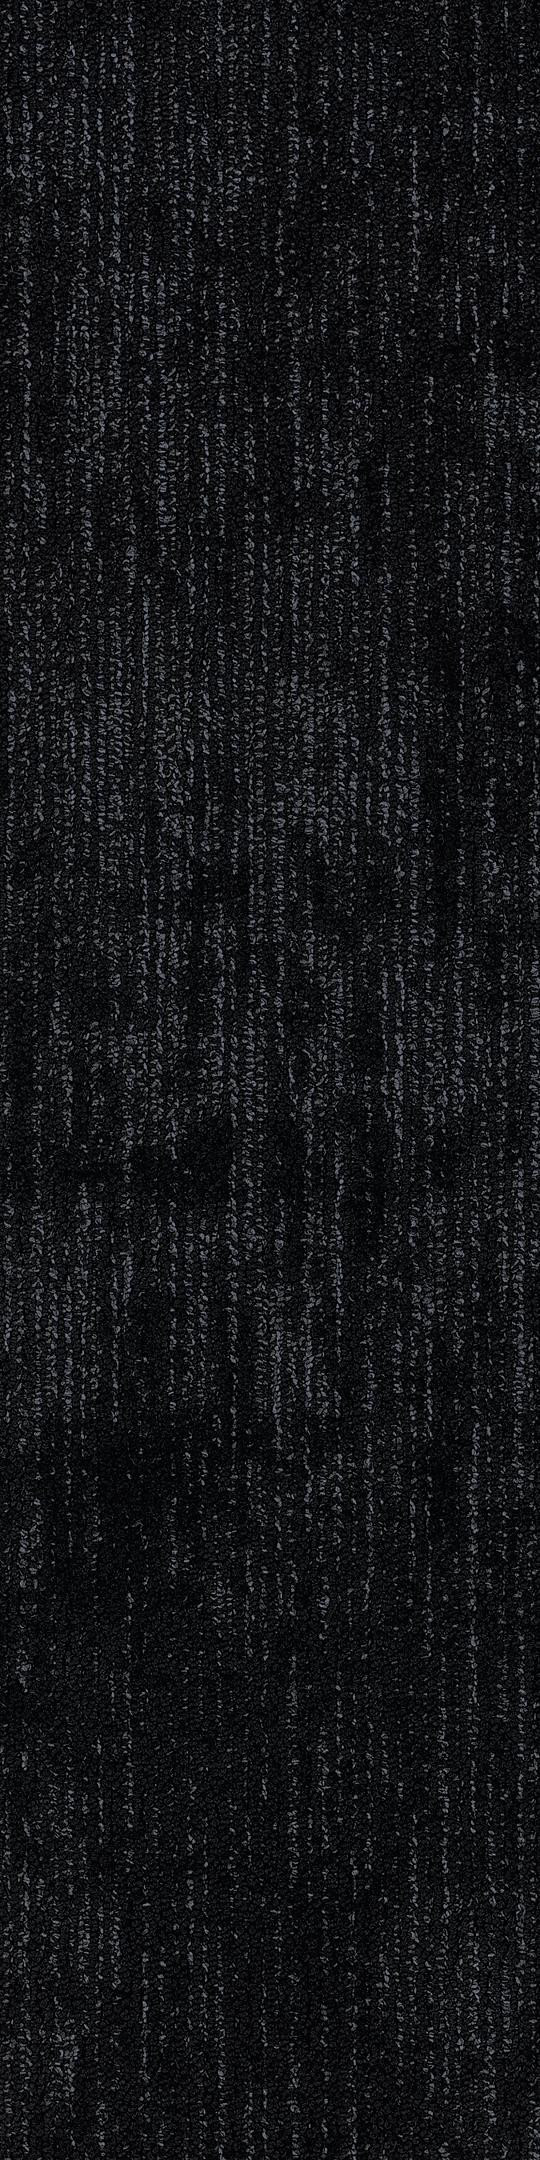 Shaw Nocturne Carpet Tile Lux